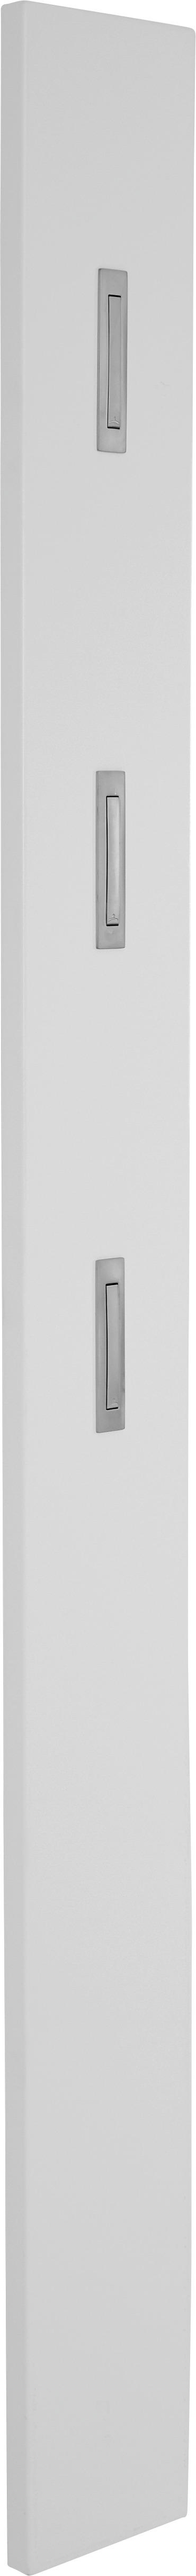 GARDEROBENPANEEL Weiß hochglanz  - Weiß hochglanz, Design (15/170/4cm)